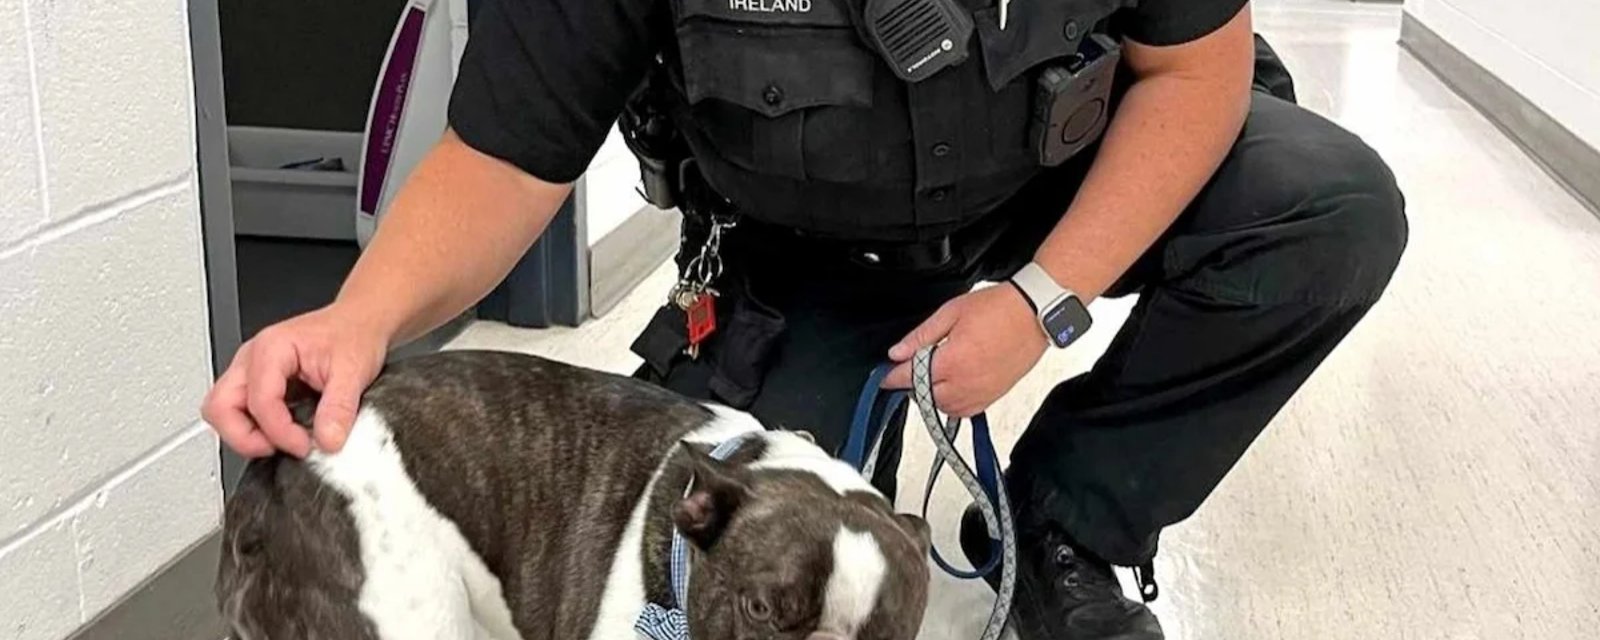 Une femme abandonne son chien dans le stationnement d'un aéroport.